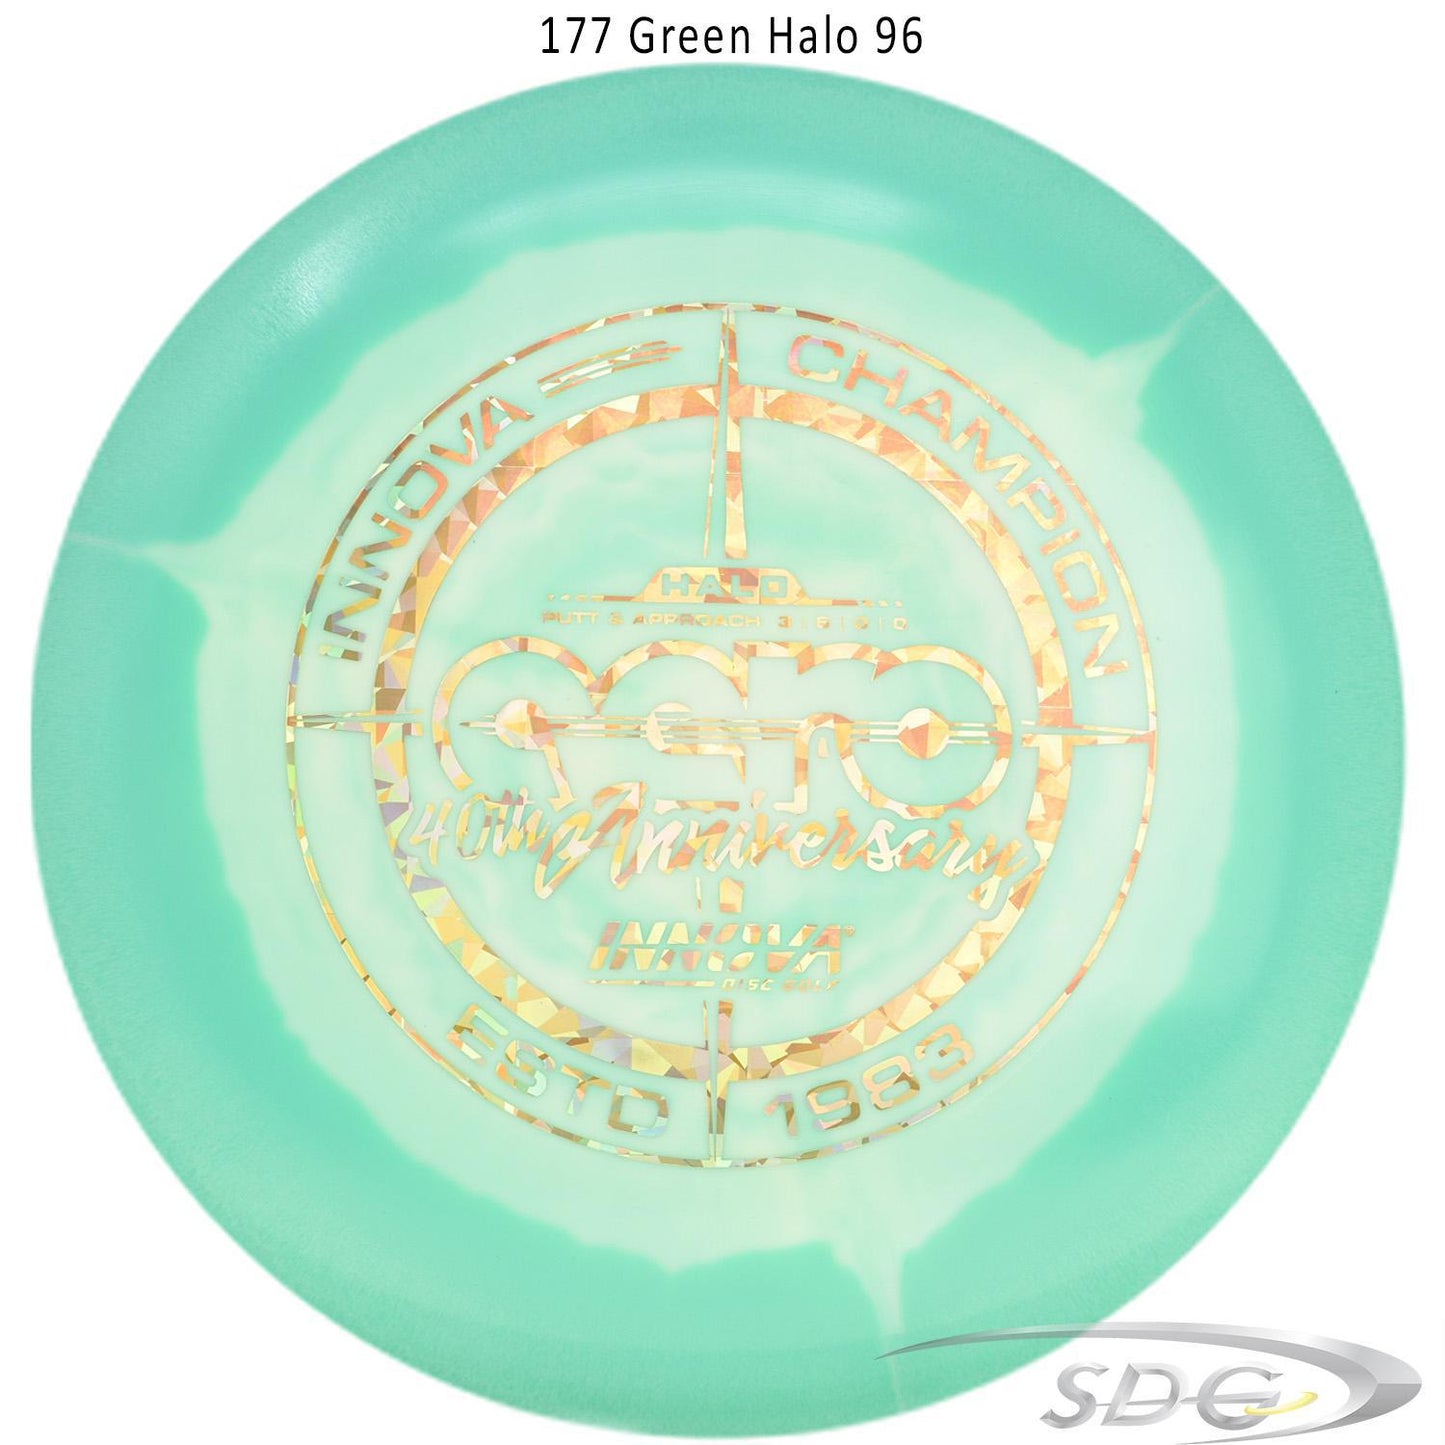 innova-halo-star-aero-40th-anniversary-le-disc-golf-putter 177 Green Halo 96 